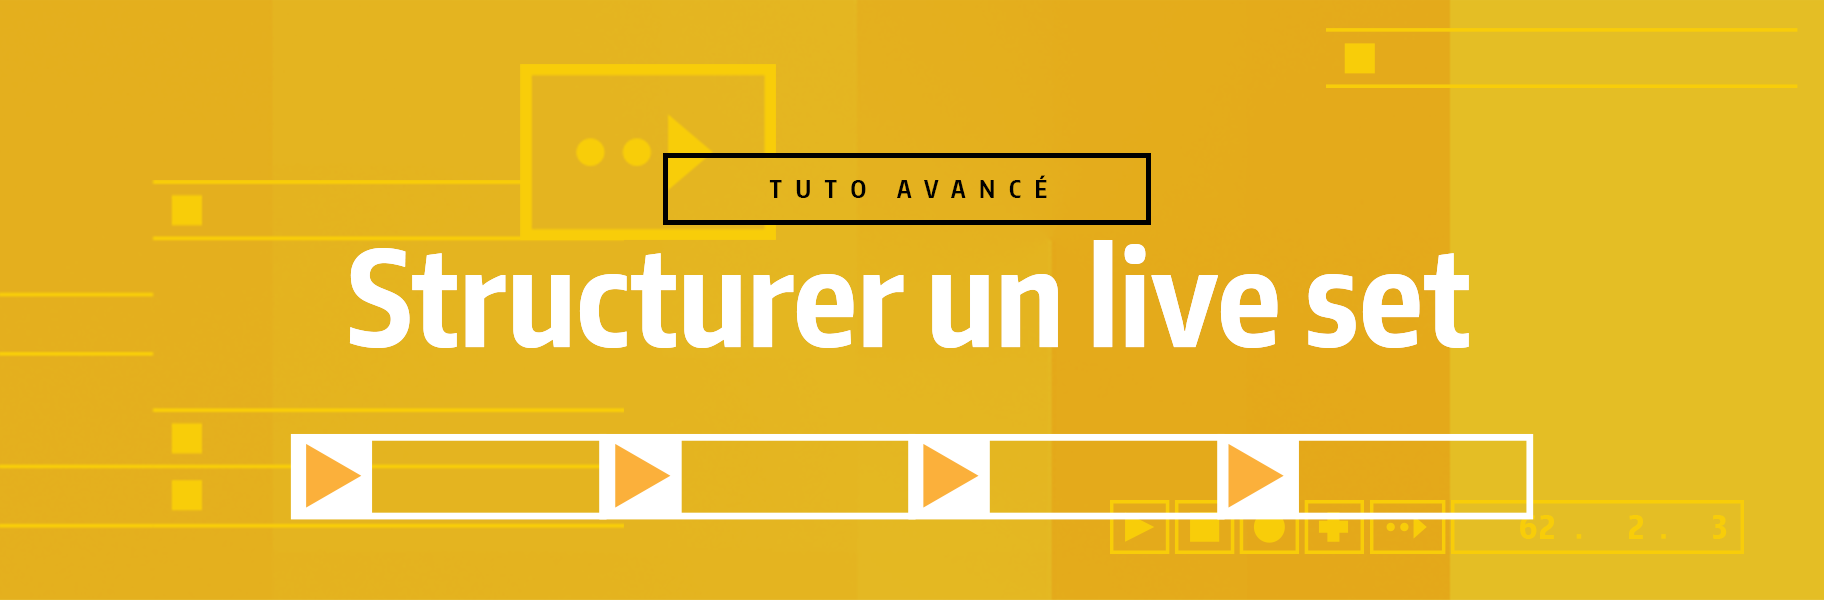 Tutoriel Ableton Live - Structurer un live set